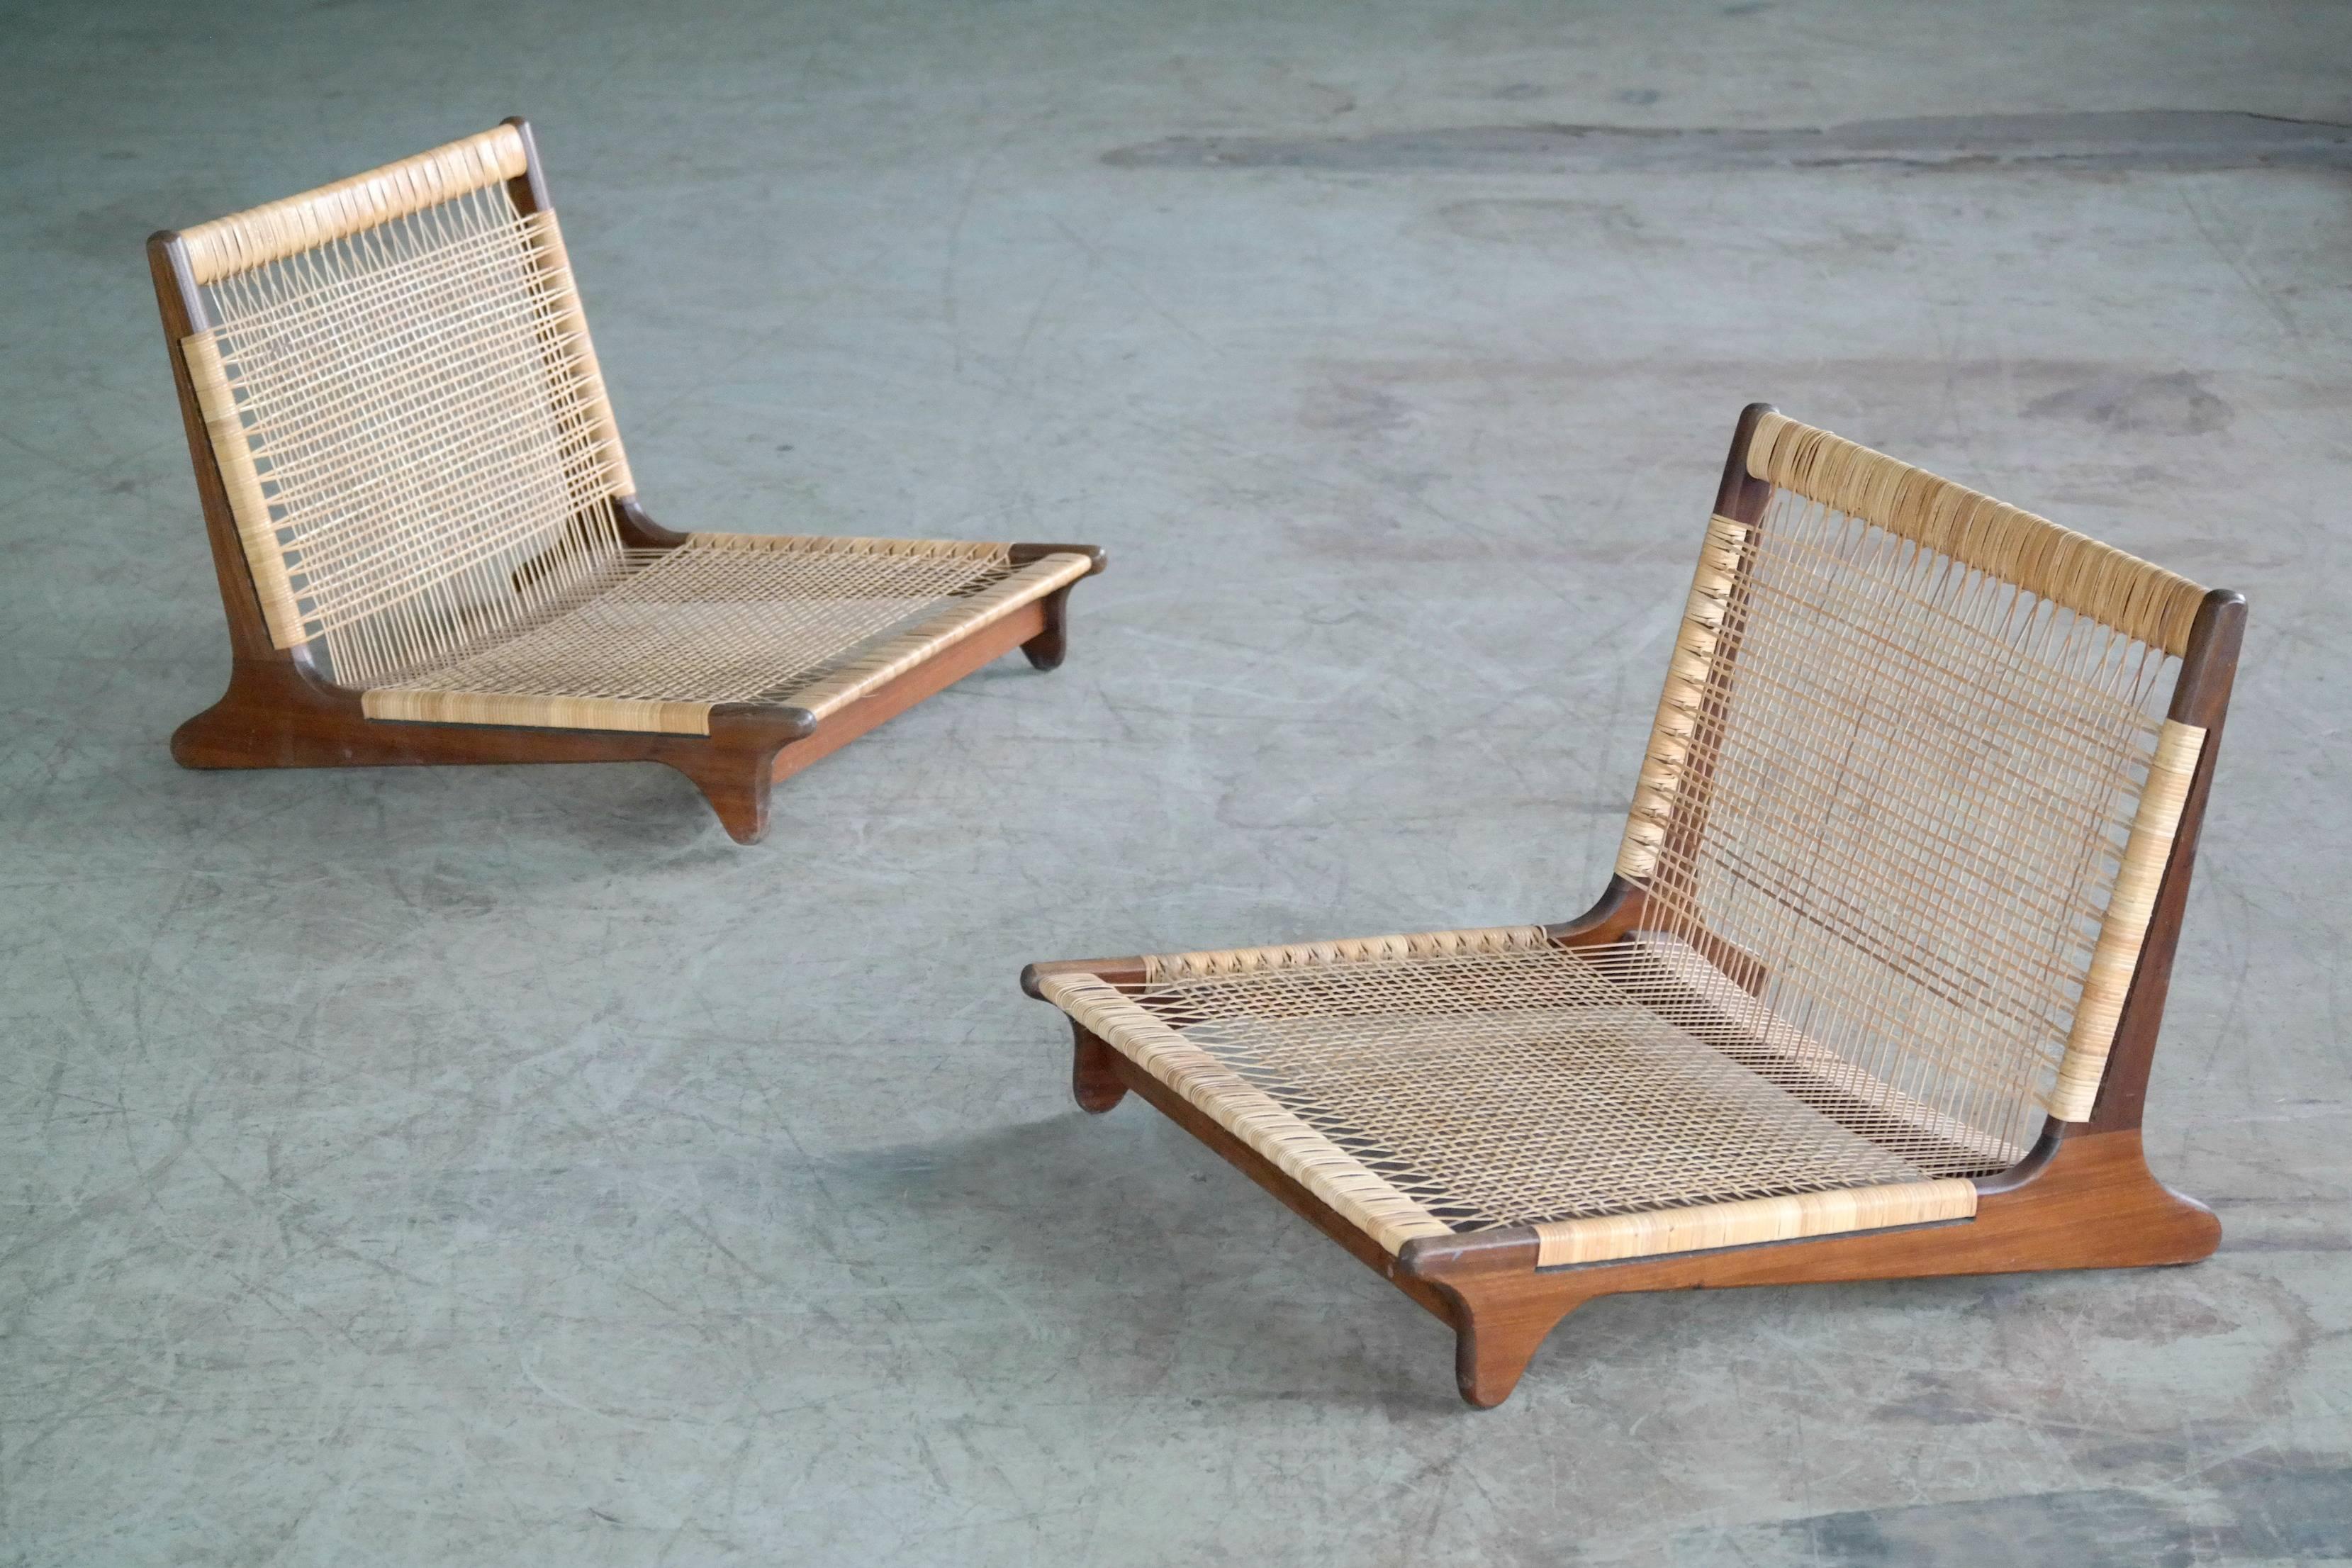 Fantastique paire de chaises modulaires conçues par Hans Olsen dans le style des chaises à manger tatami japonaises. Conçu en 1957 dans le cadre d'un système de mobilier modulaire pour Bramin Mobler:: où les chaises et les tables pouvaient être